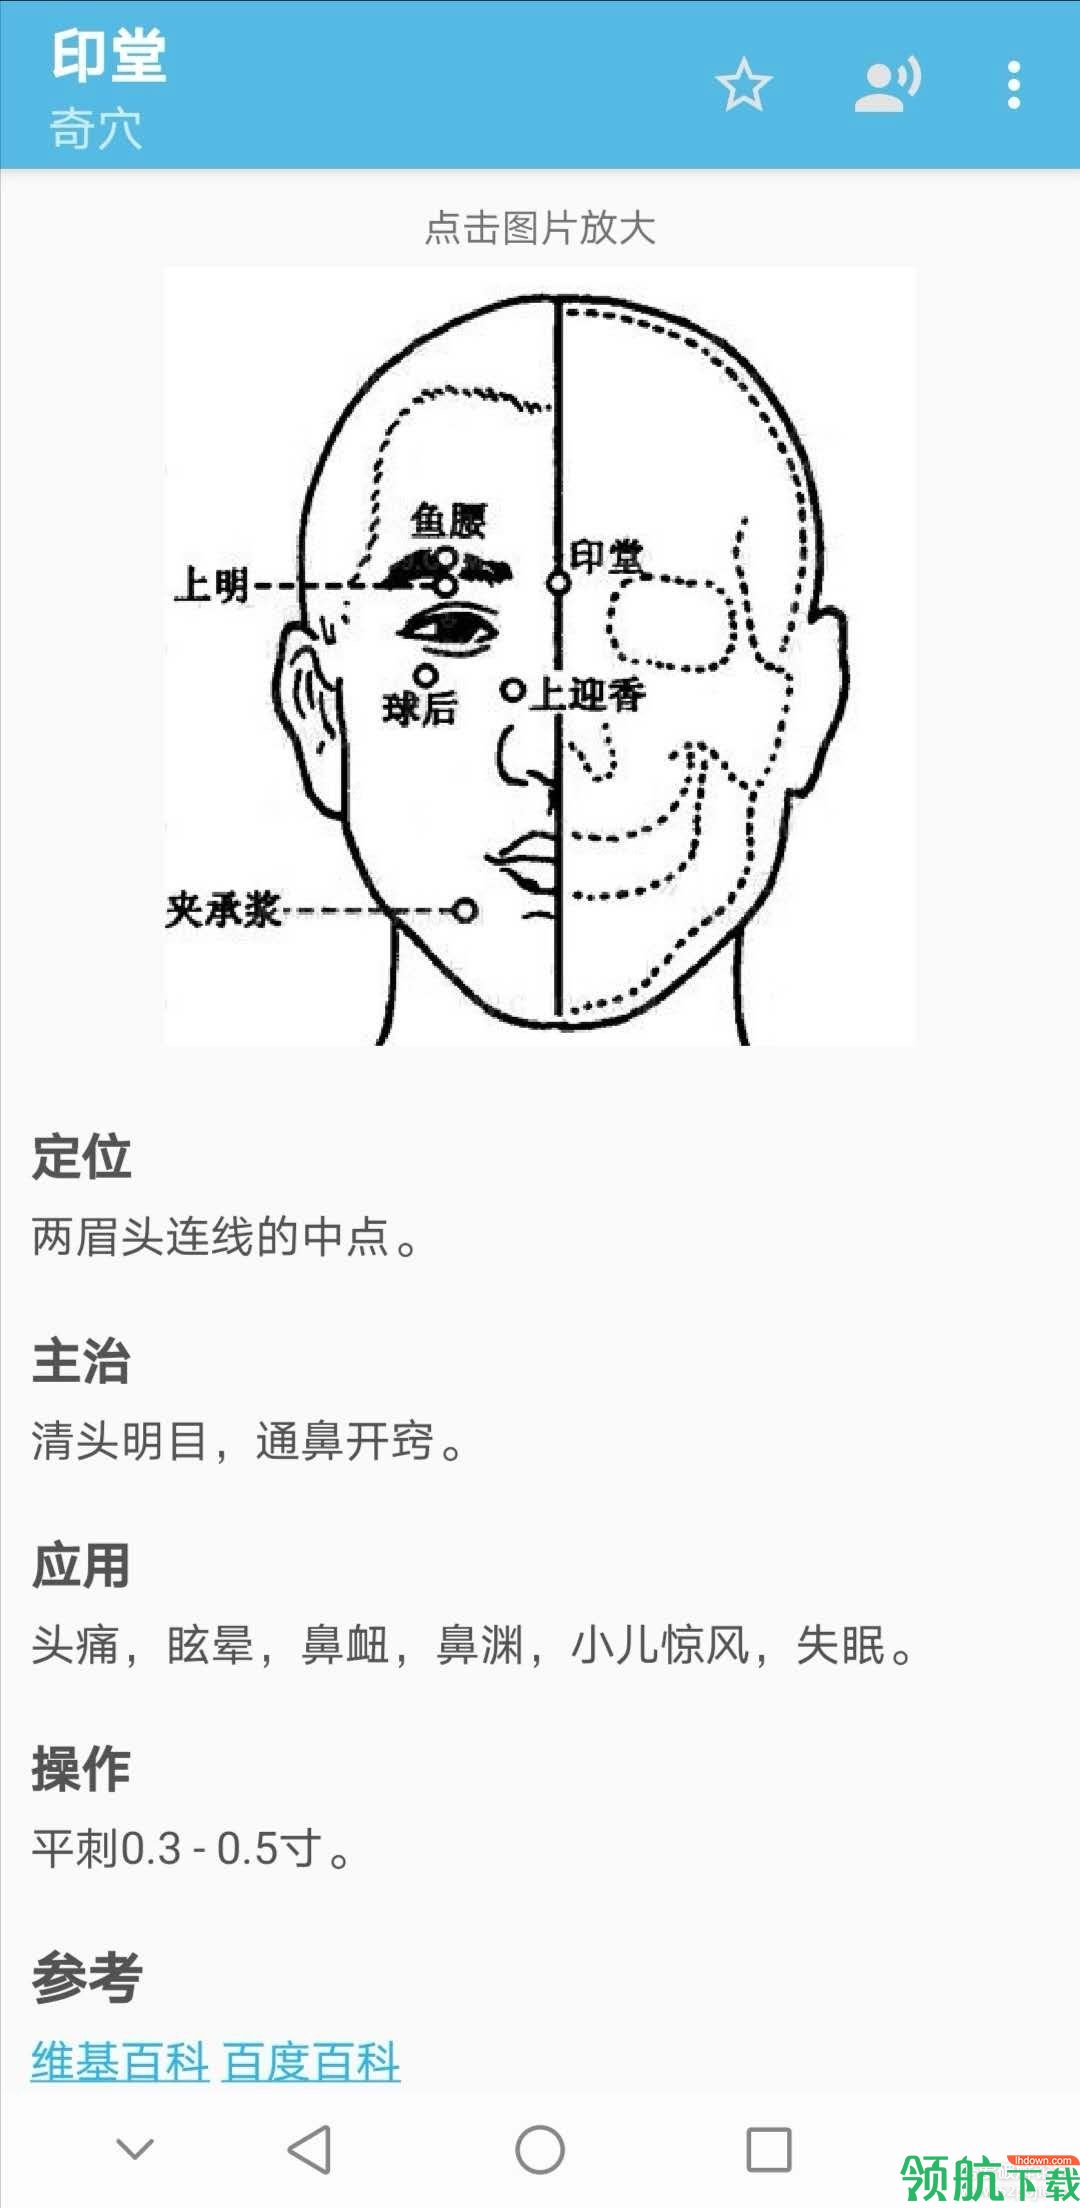 中医百科针灸app安卓最新版